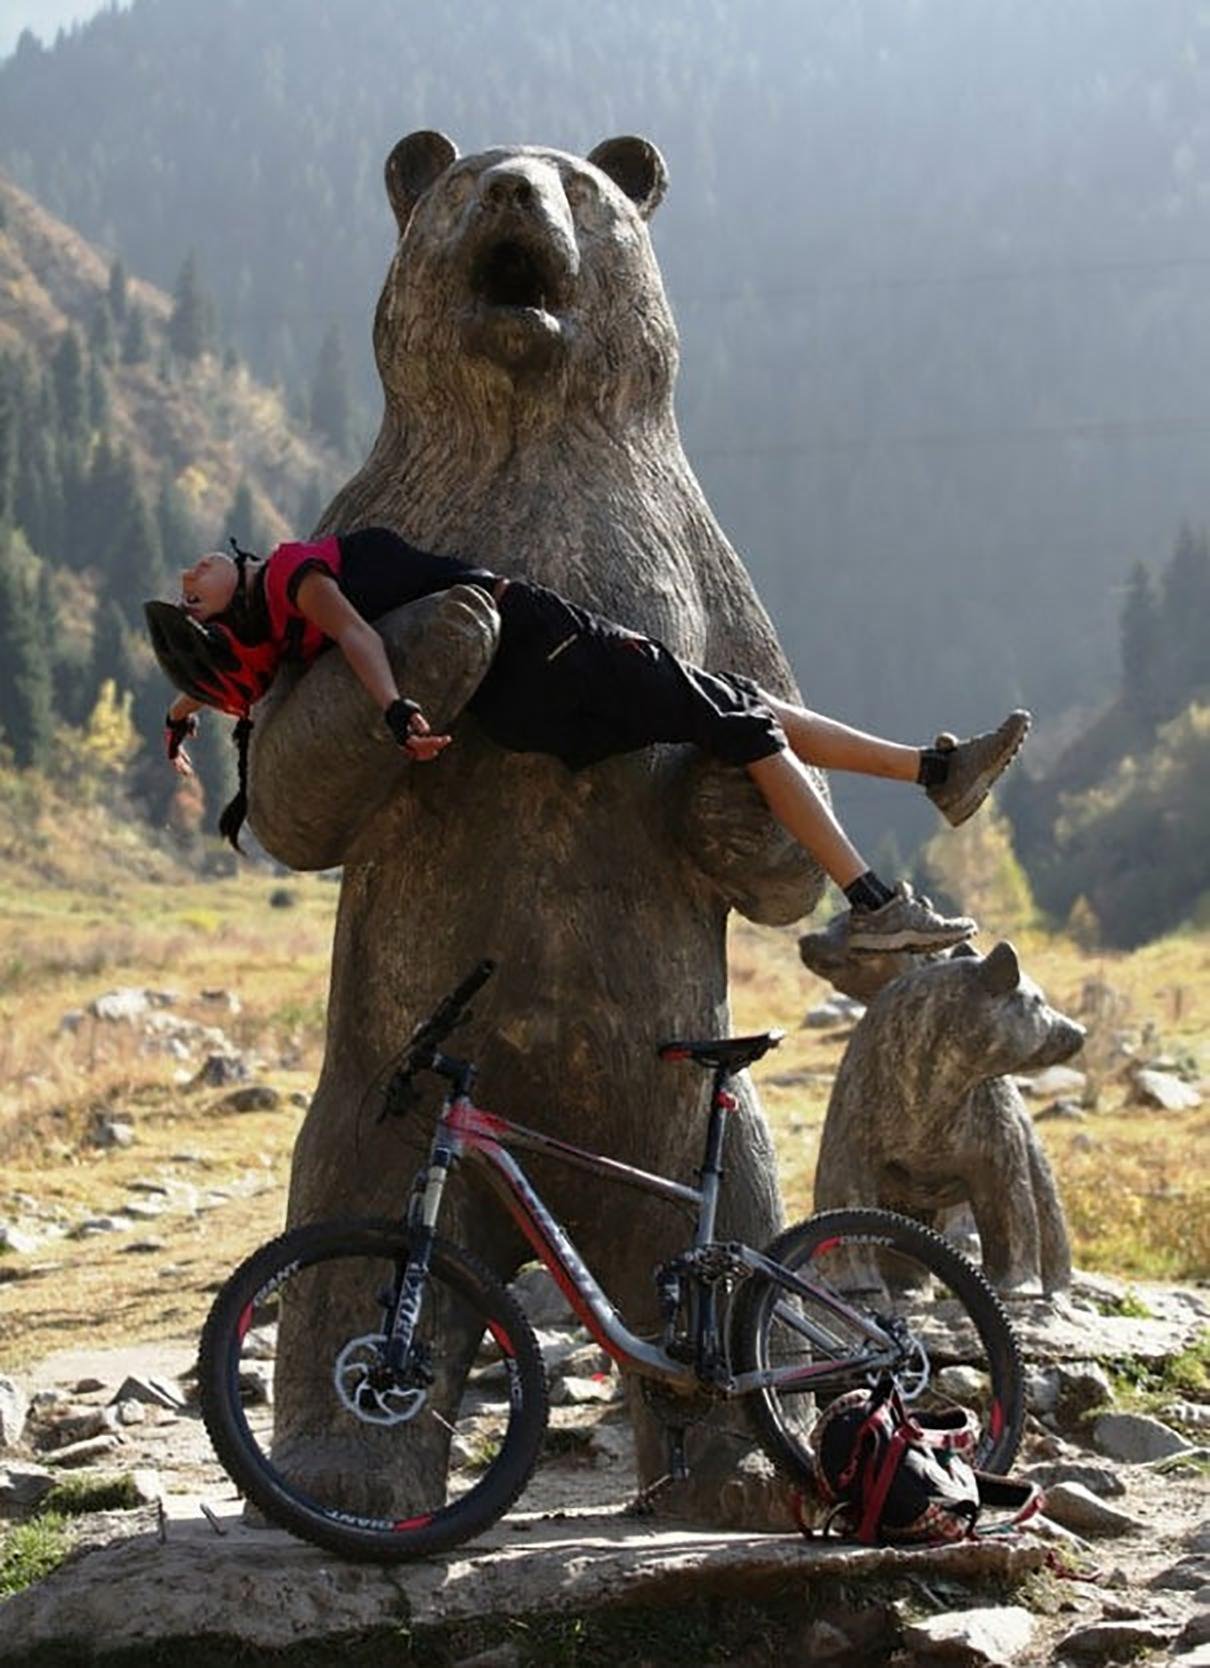 Картинки про приколом. Медведь на велосипеде фото. Медведь и туризм. Картинки приколы. Любопытный человек.